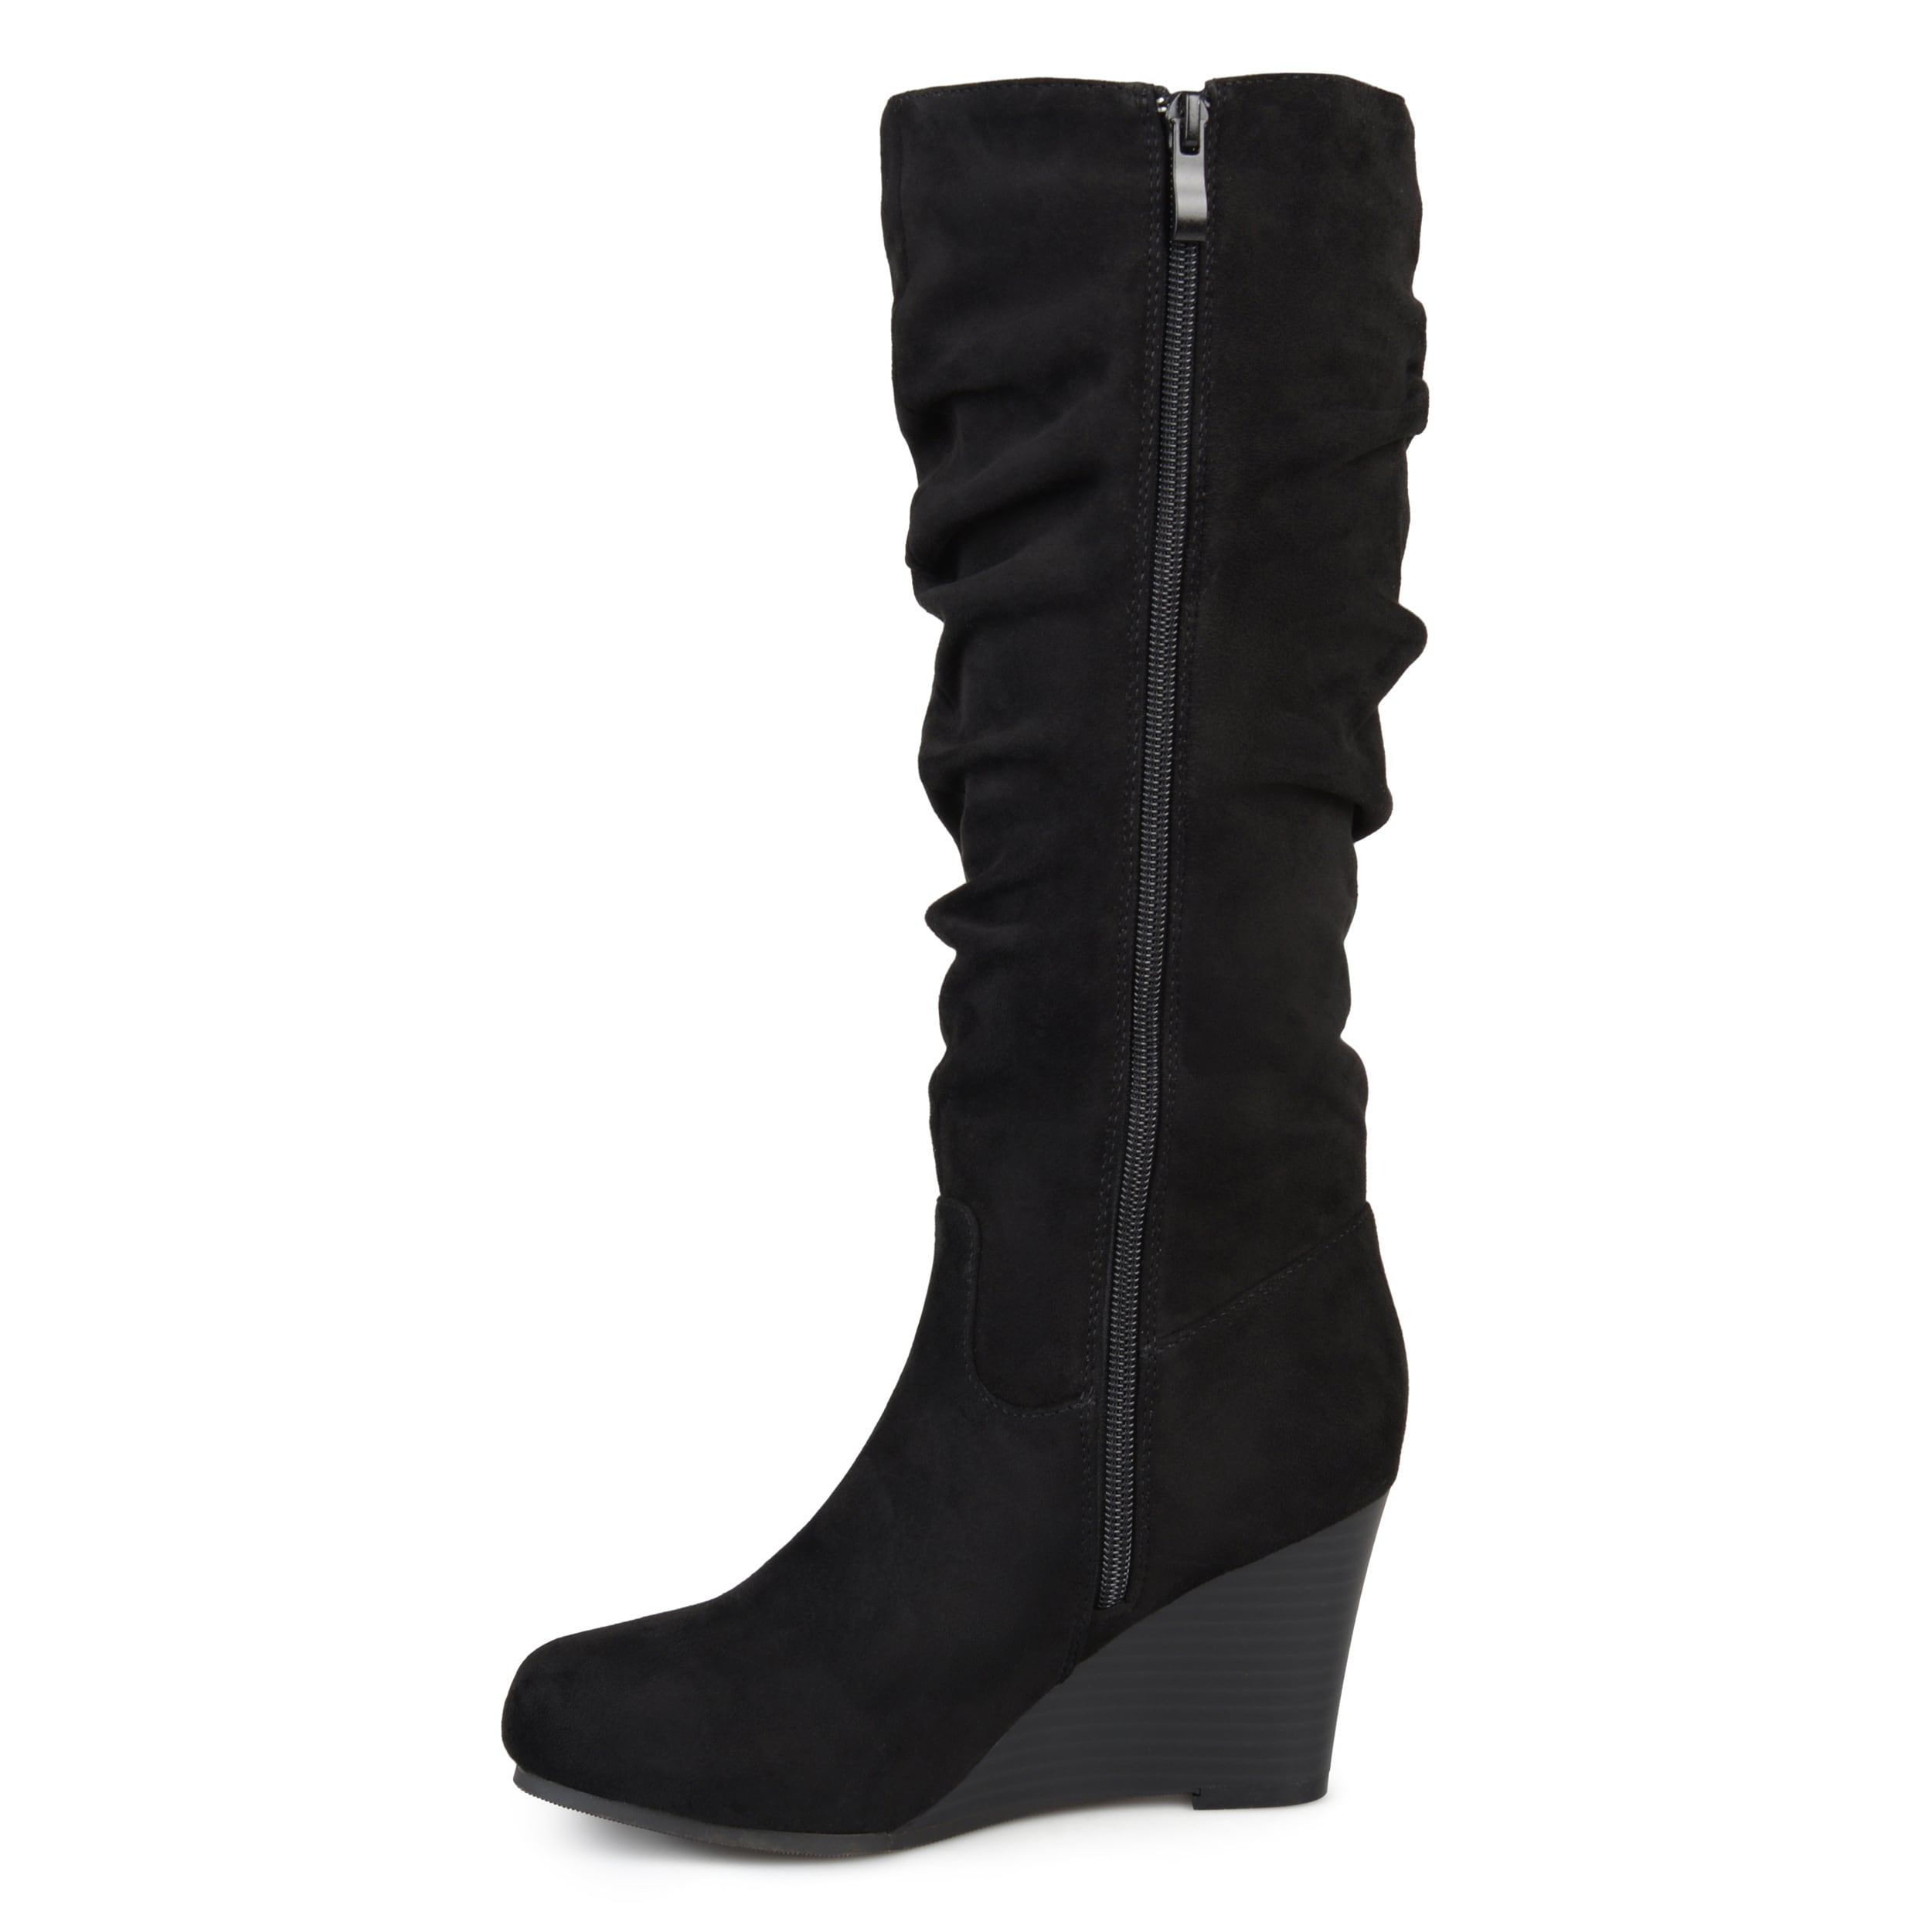 wide calf high heeled boots